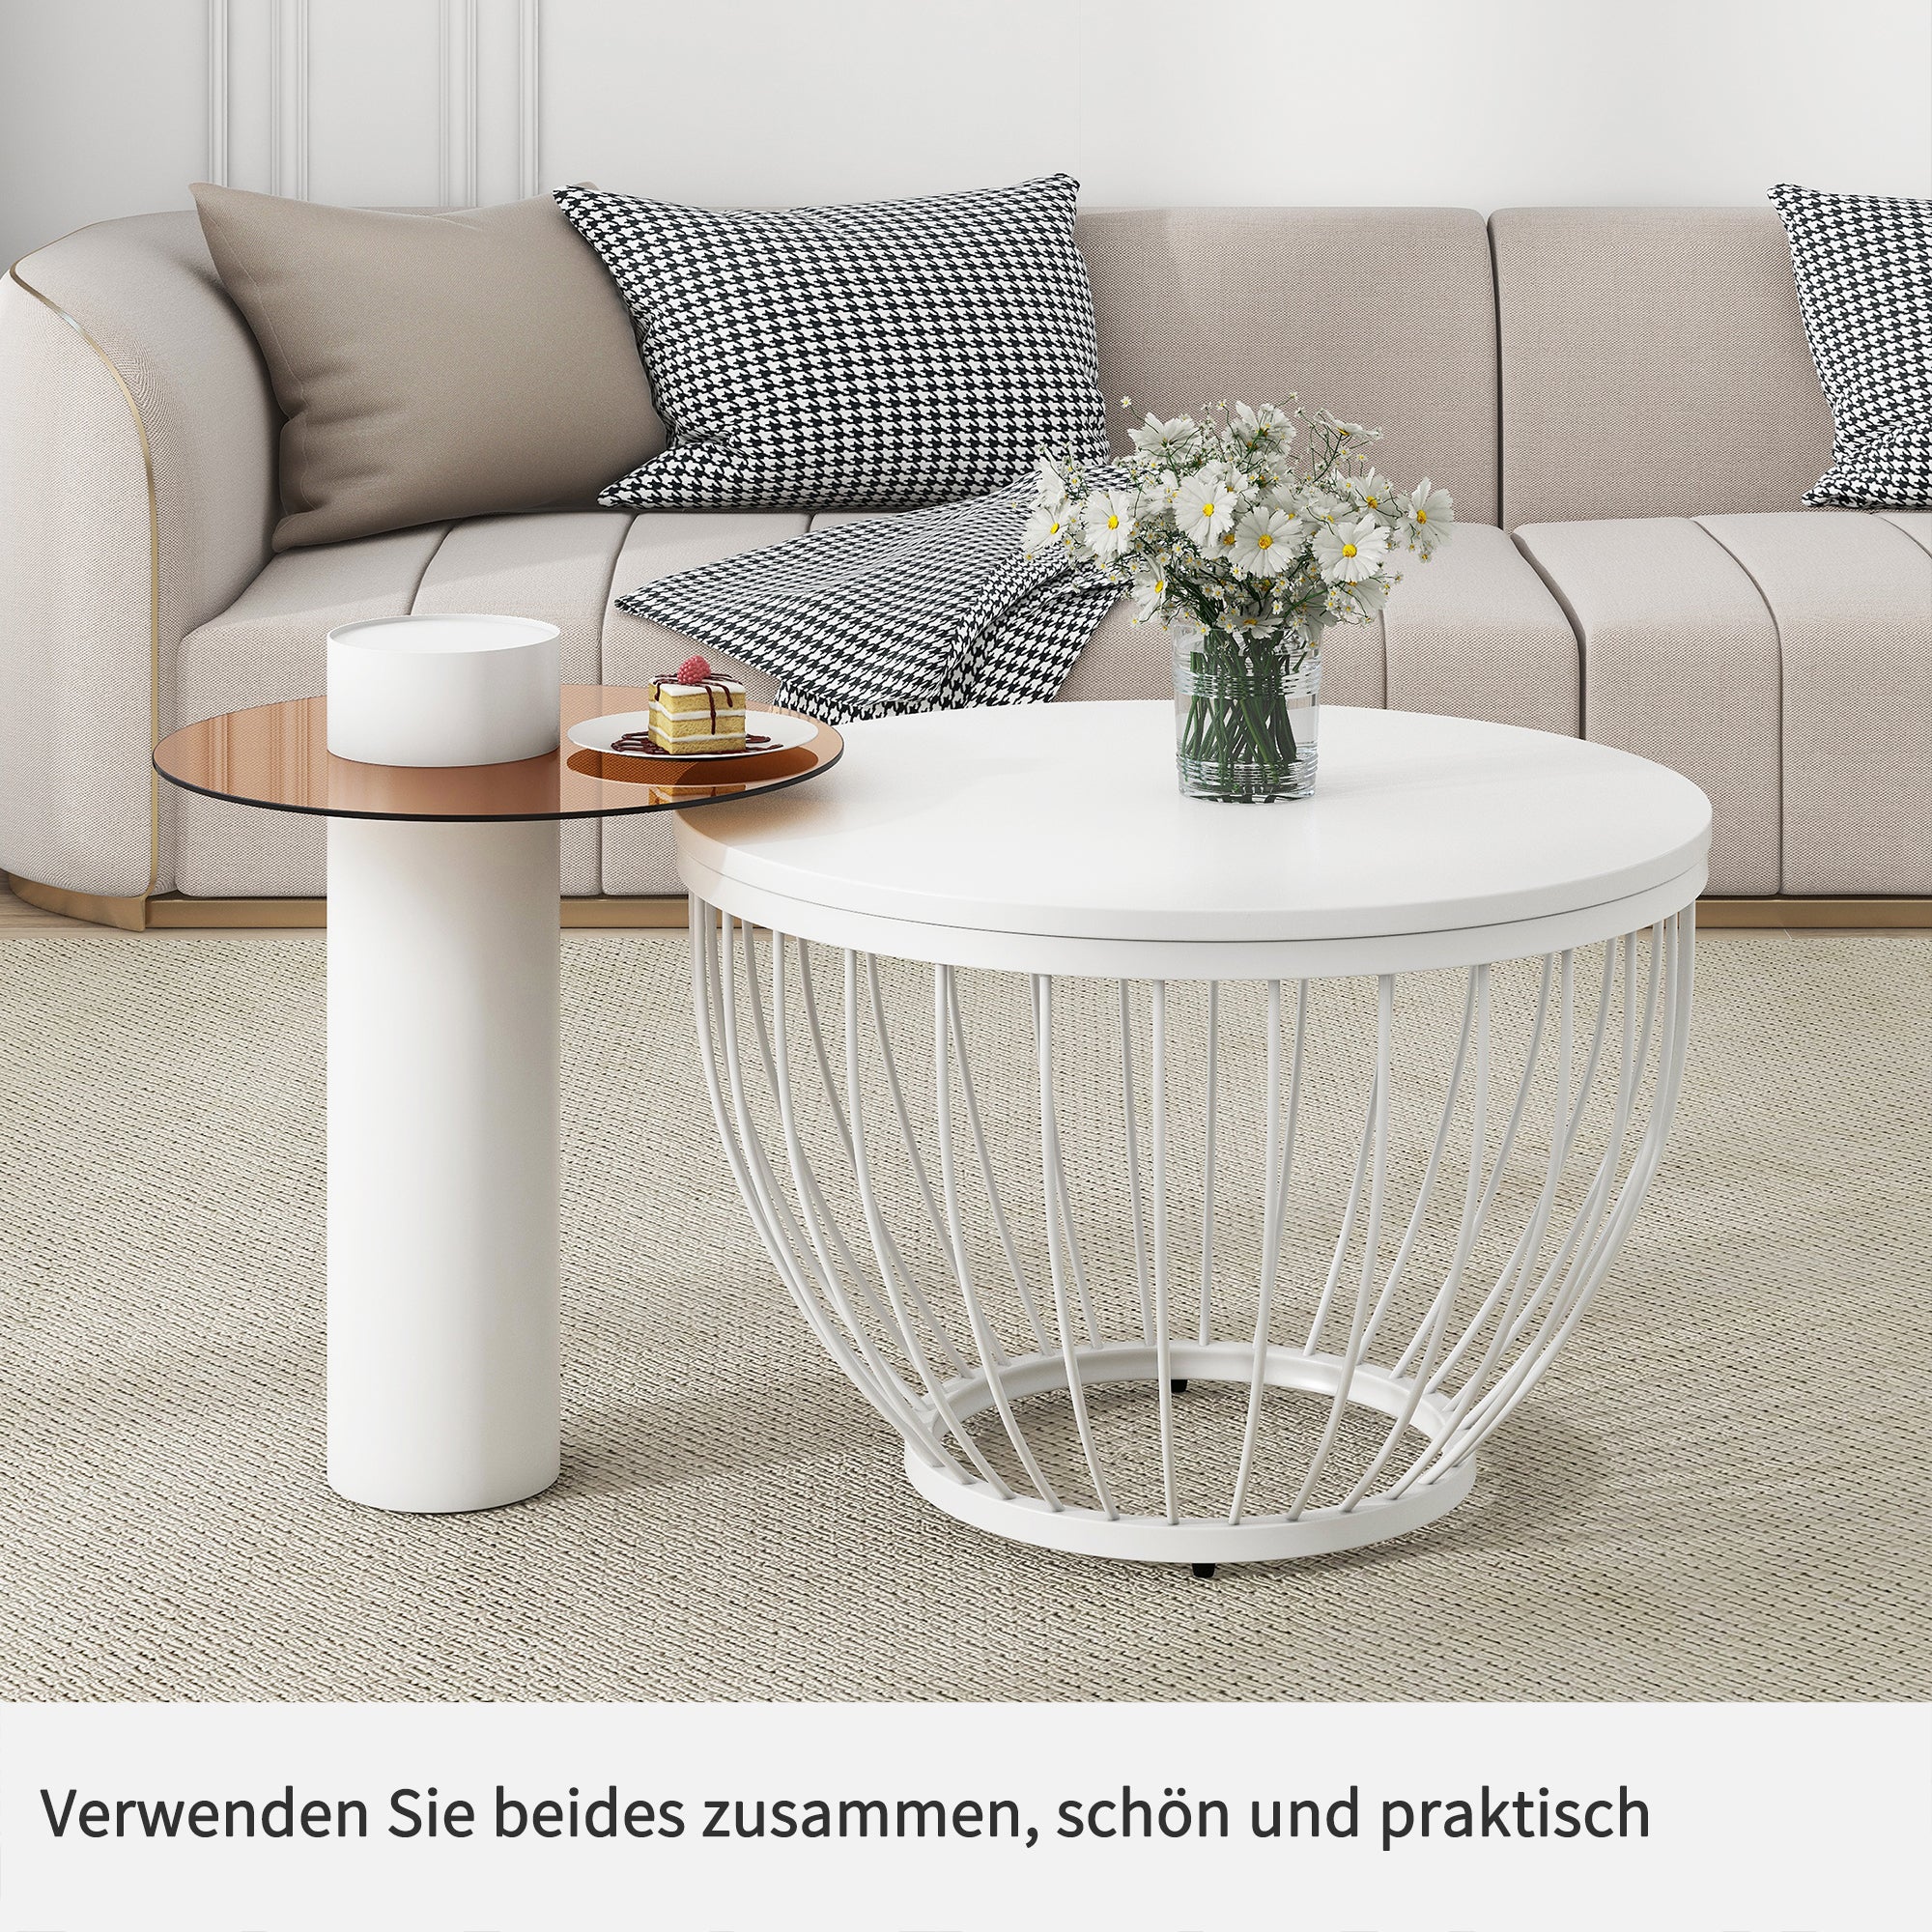 okwish 2 Couchtisch-Set, Nesting-Design, MDF- und Holzoptik, Stahlrahmen, Glas und PVC, eleganter moderner Wohnzimmer-Sofatisch, stilvolle Möbel (weiß)